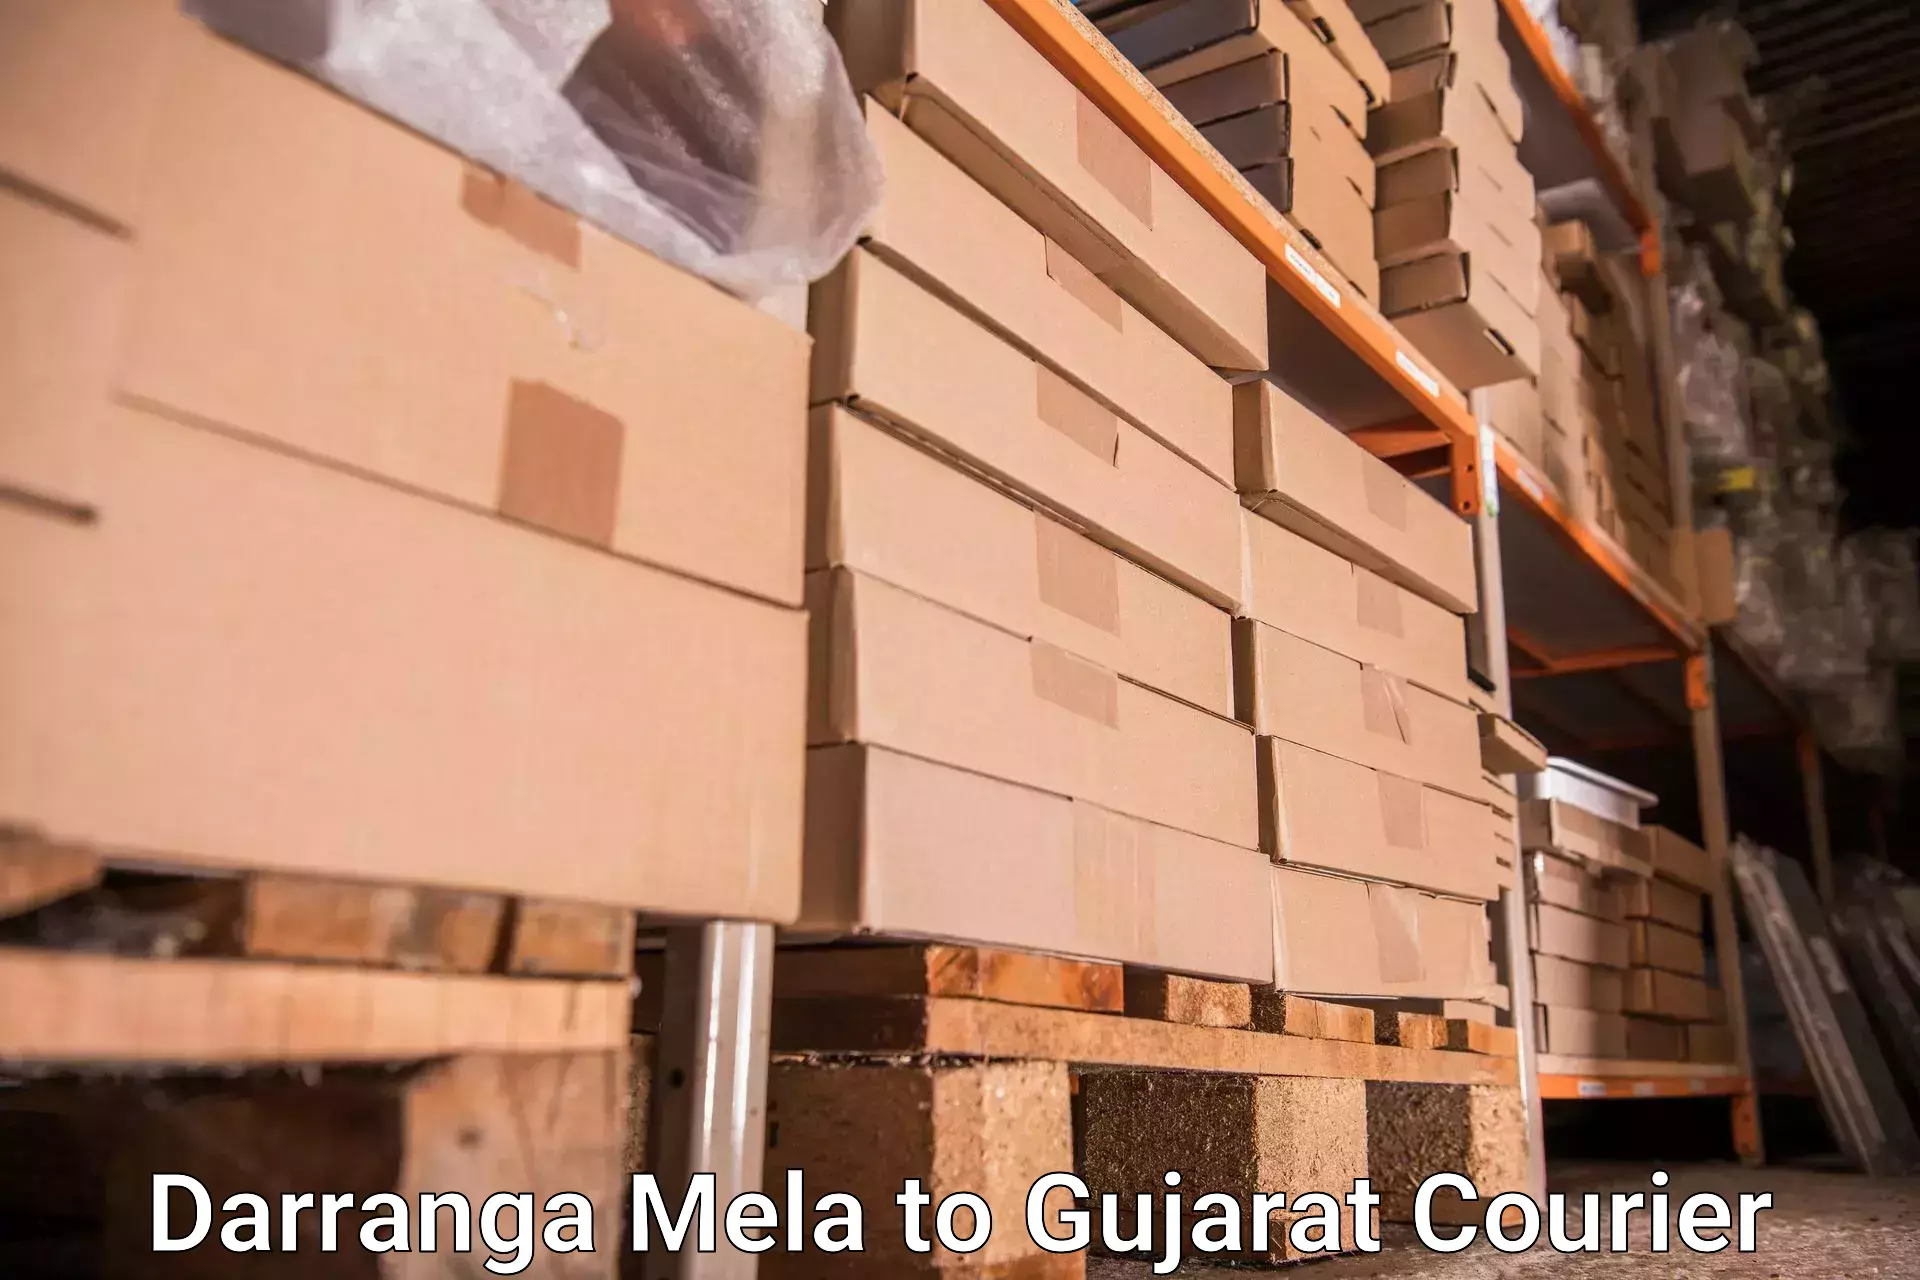 Luggage shipment processing in Darranga Mela to Umreth